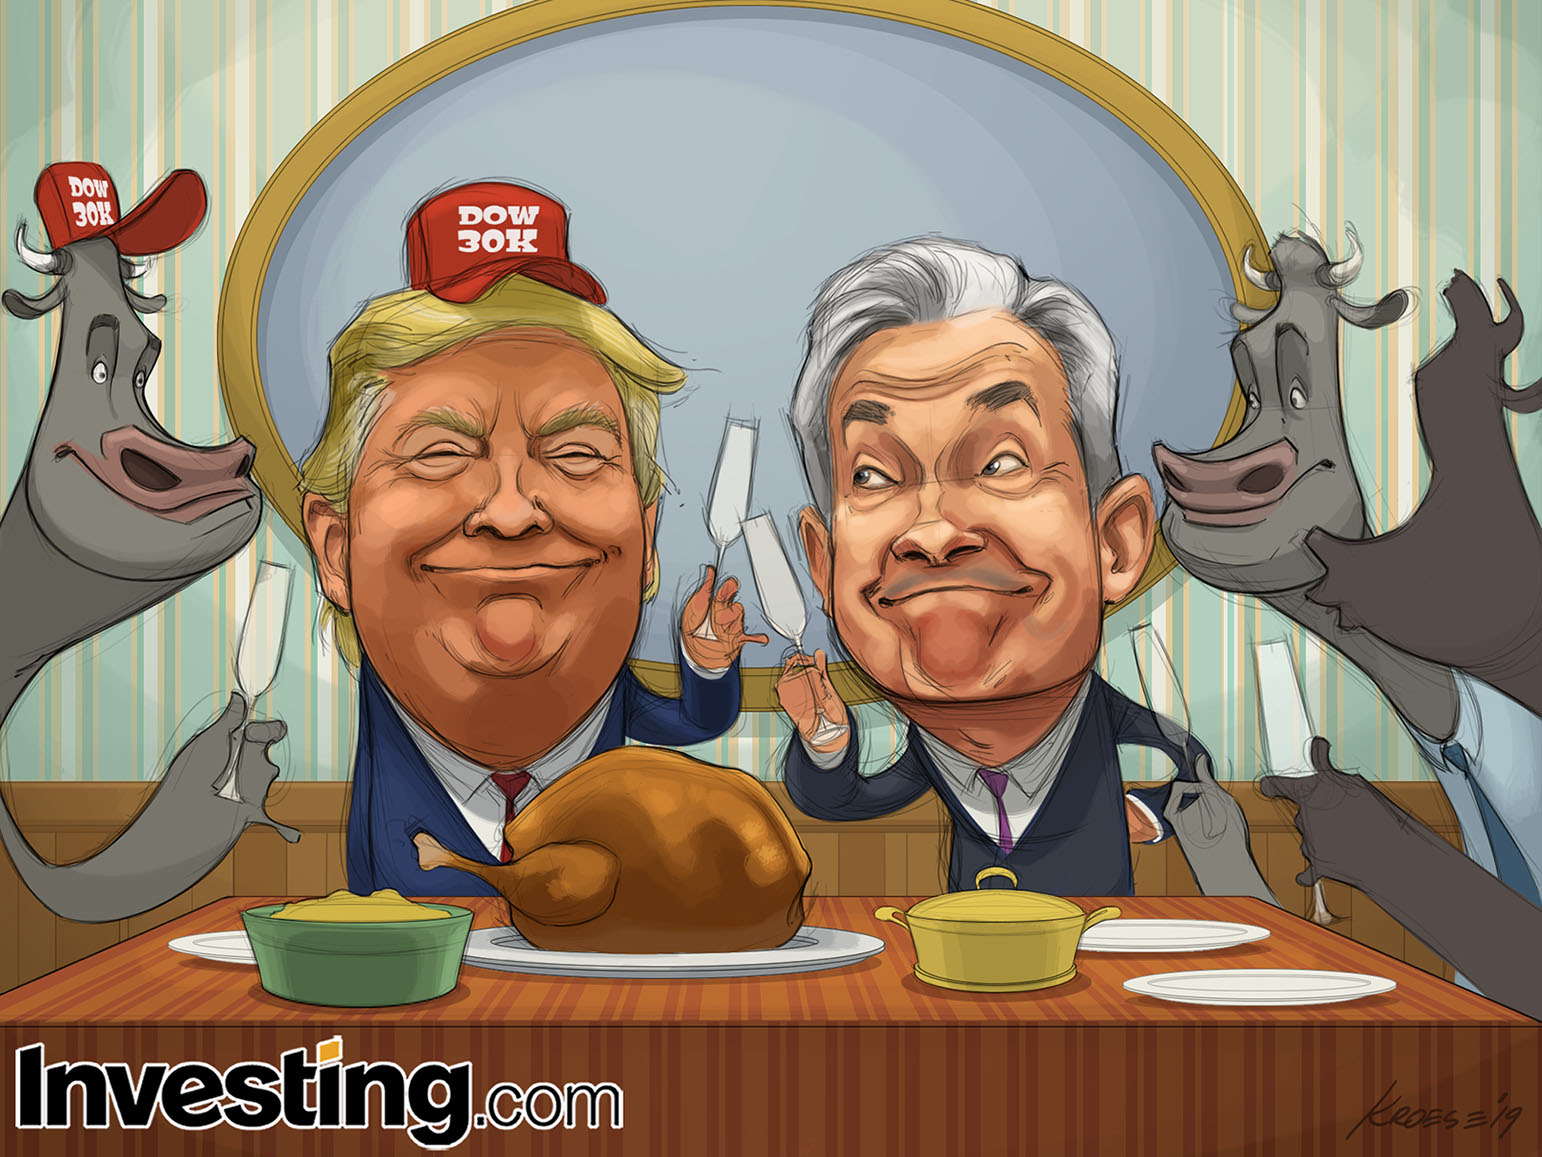 Les indices boursiers sont sur des sommets historiques, ce qui promet un Thanksgiving festif pour les haussiers (et pour Trump)